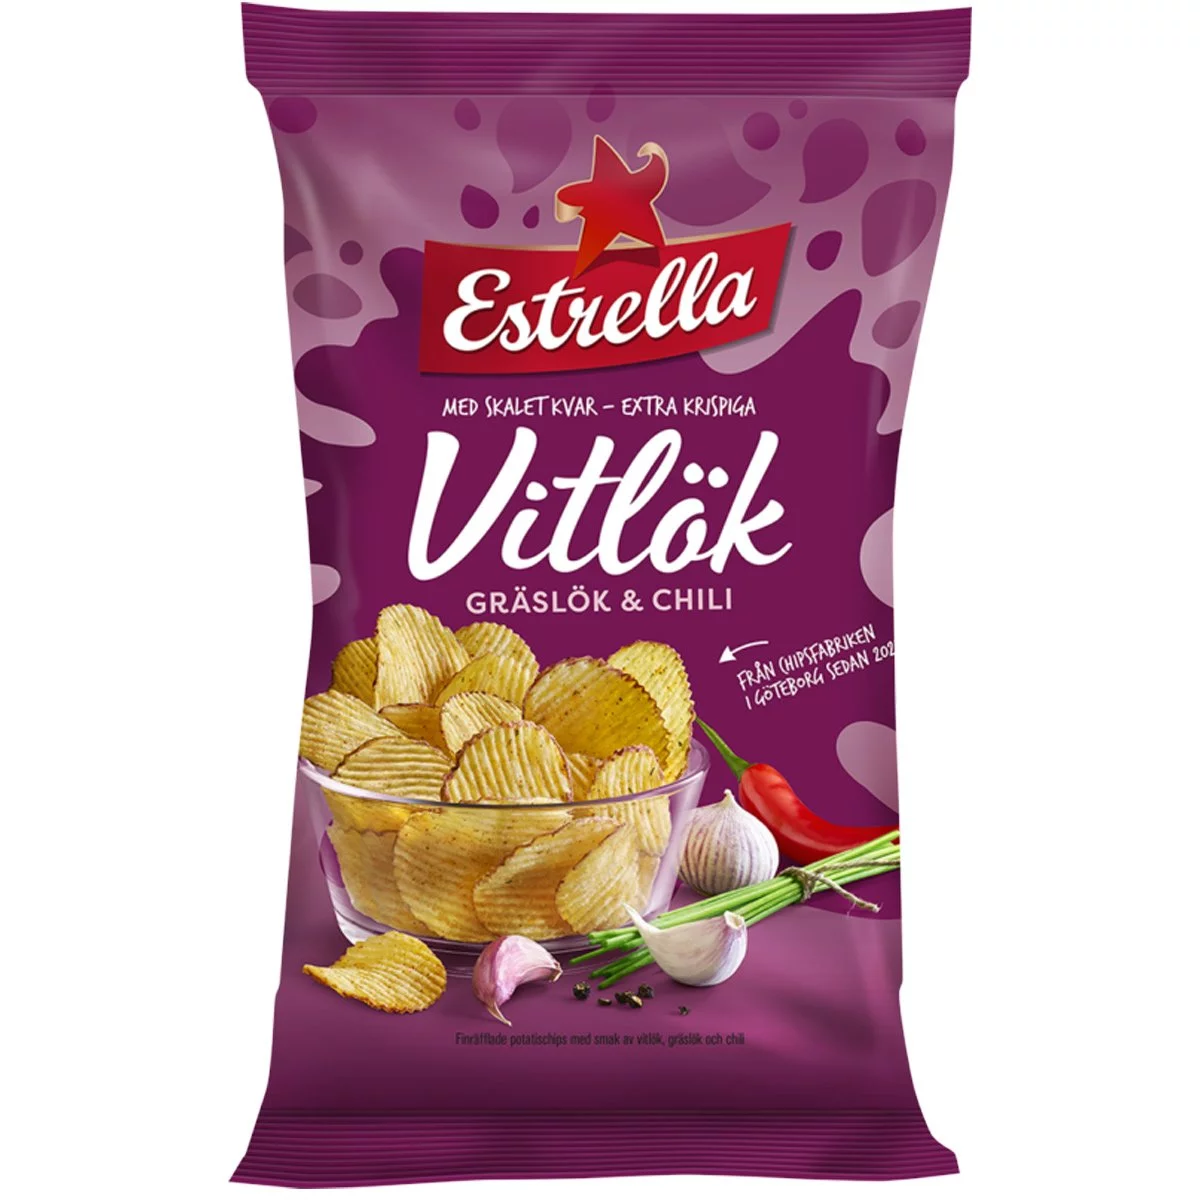 Estrella Chips Vitlök Gräslök & Chilli (175g) 1